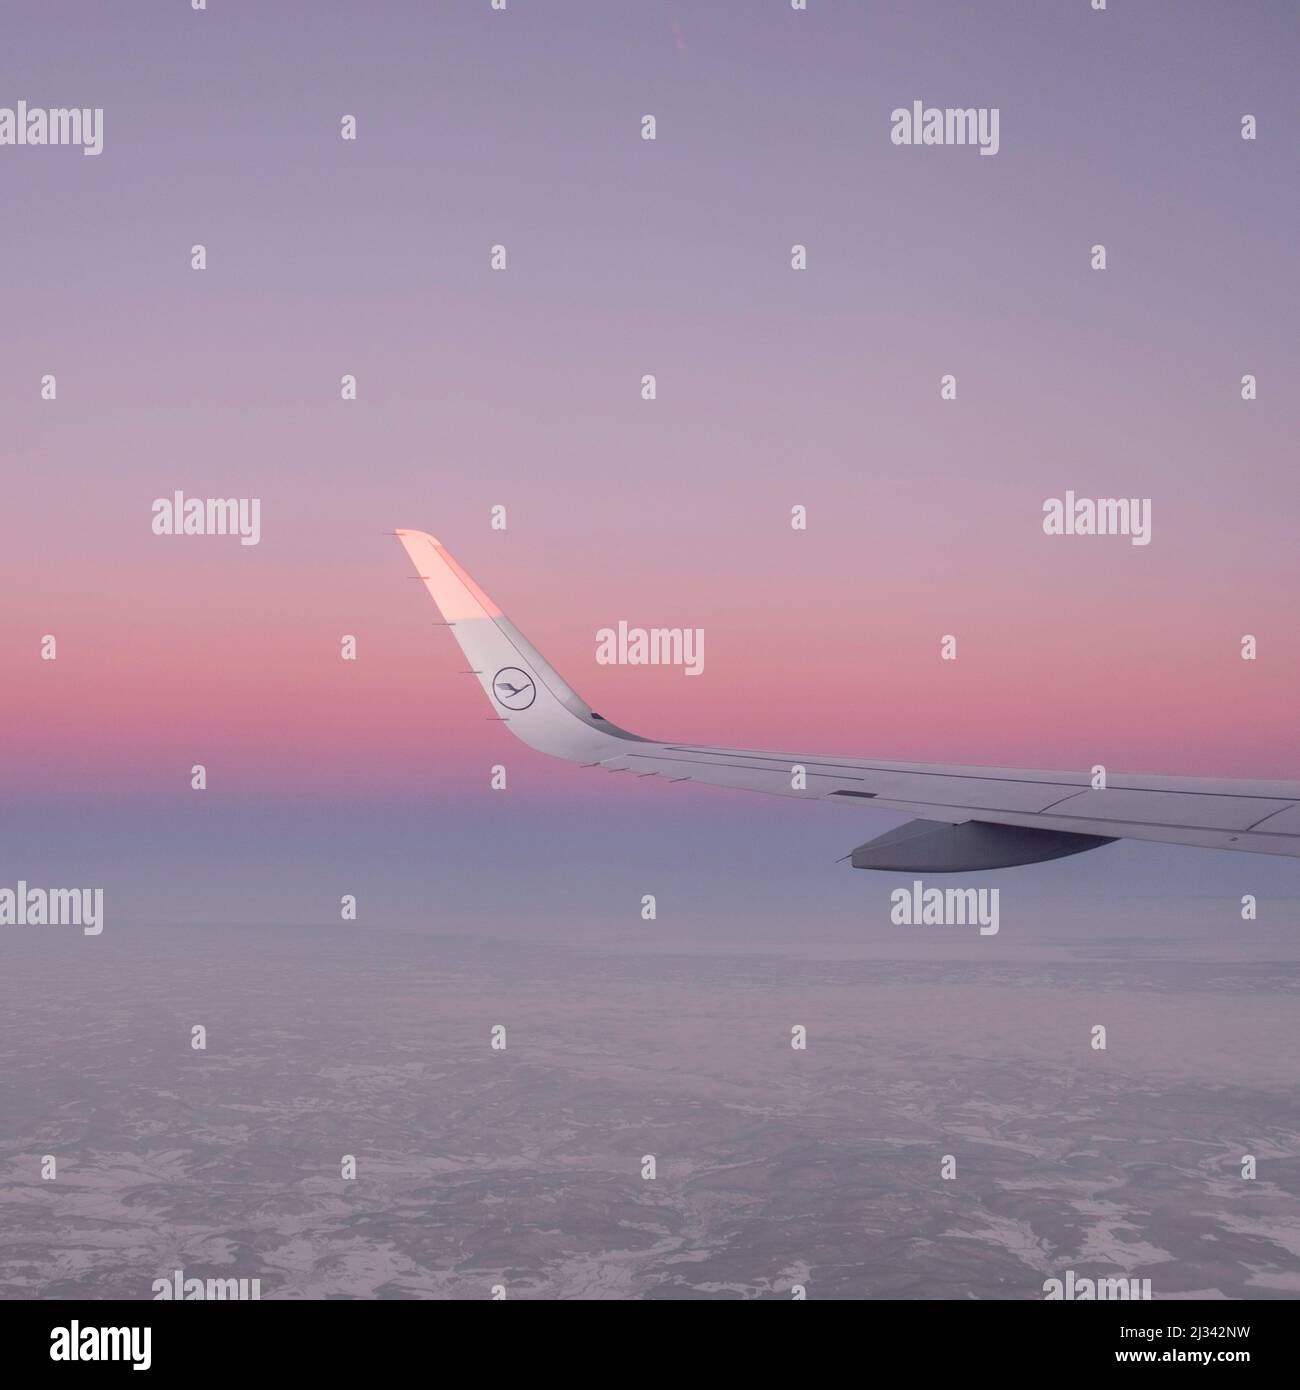 HAMBURG, DEUTSCHLAND - 19. JAN 2017: Strahlende Sonne am Flügel eines Lufthansa-Flugzeugs, das bei Sonnenaufgang fliegt Stockfoto